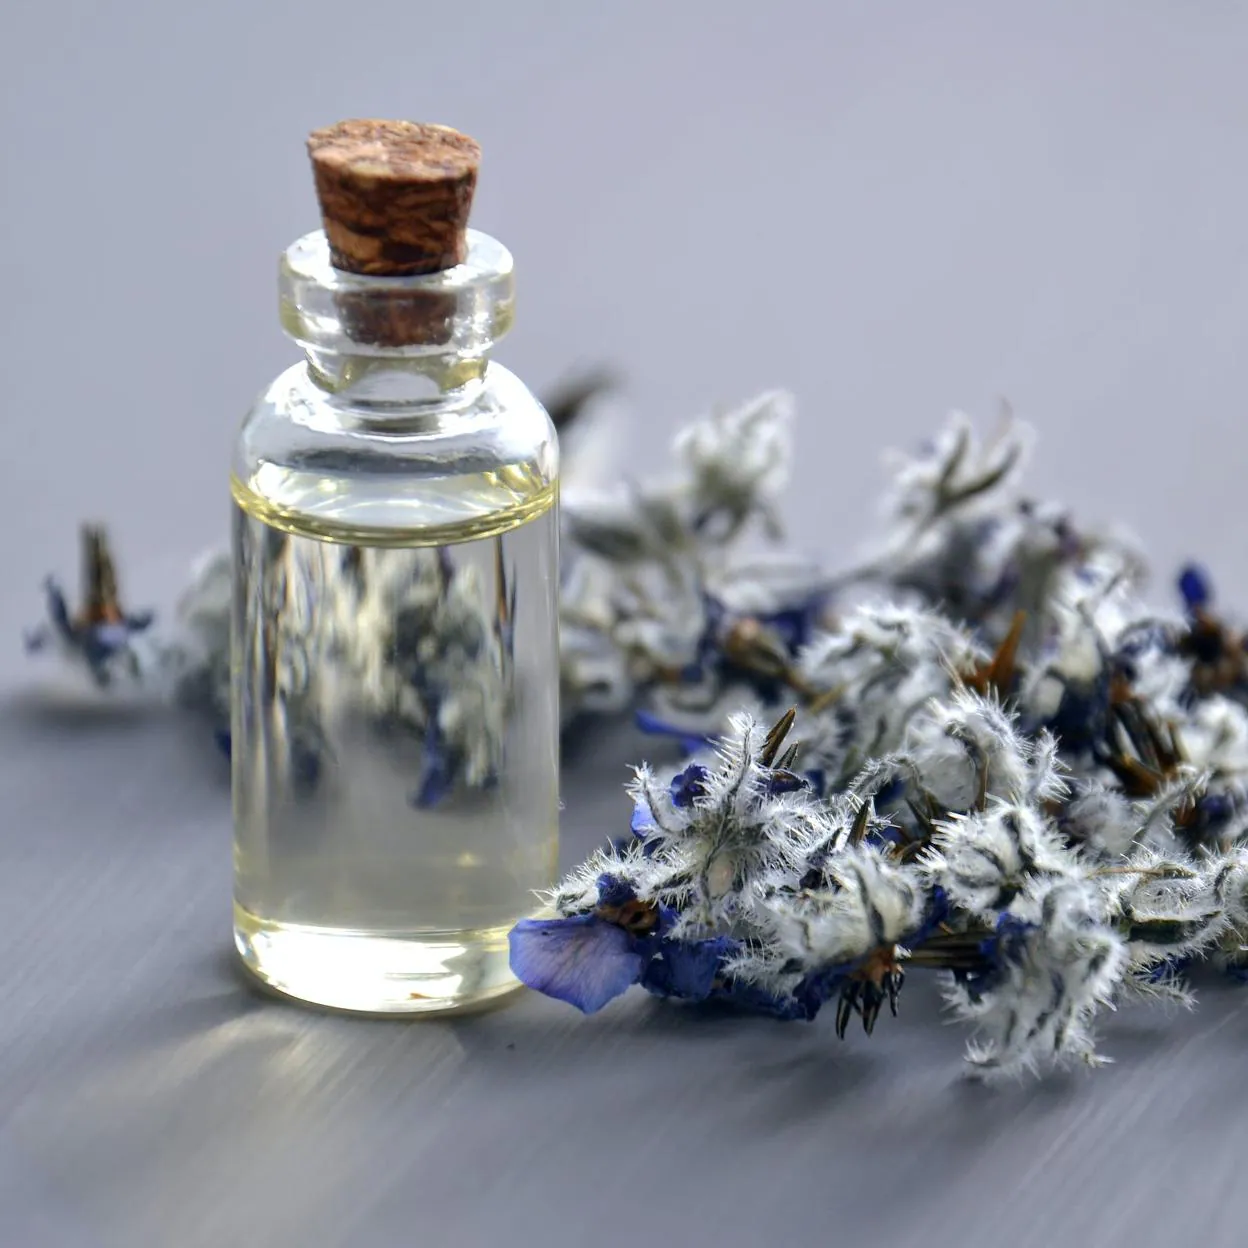 Aromaterapia: ¿Por qué el uso de aceite esencial no es aprobado